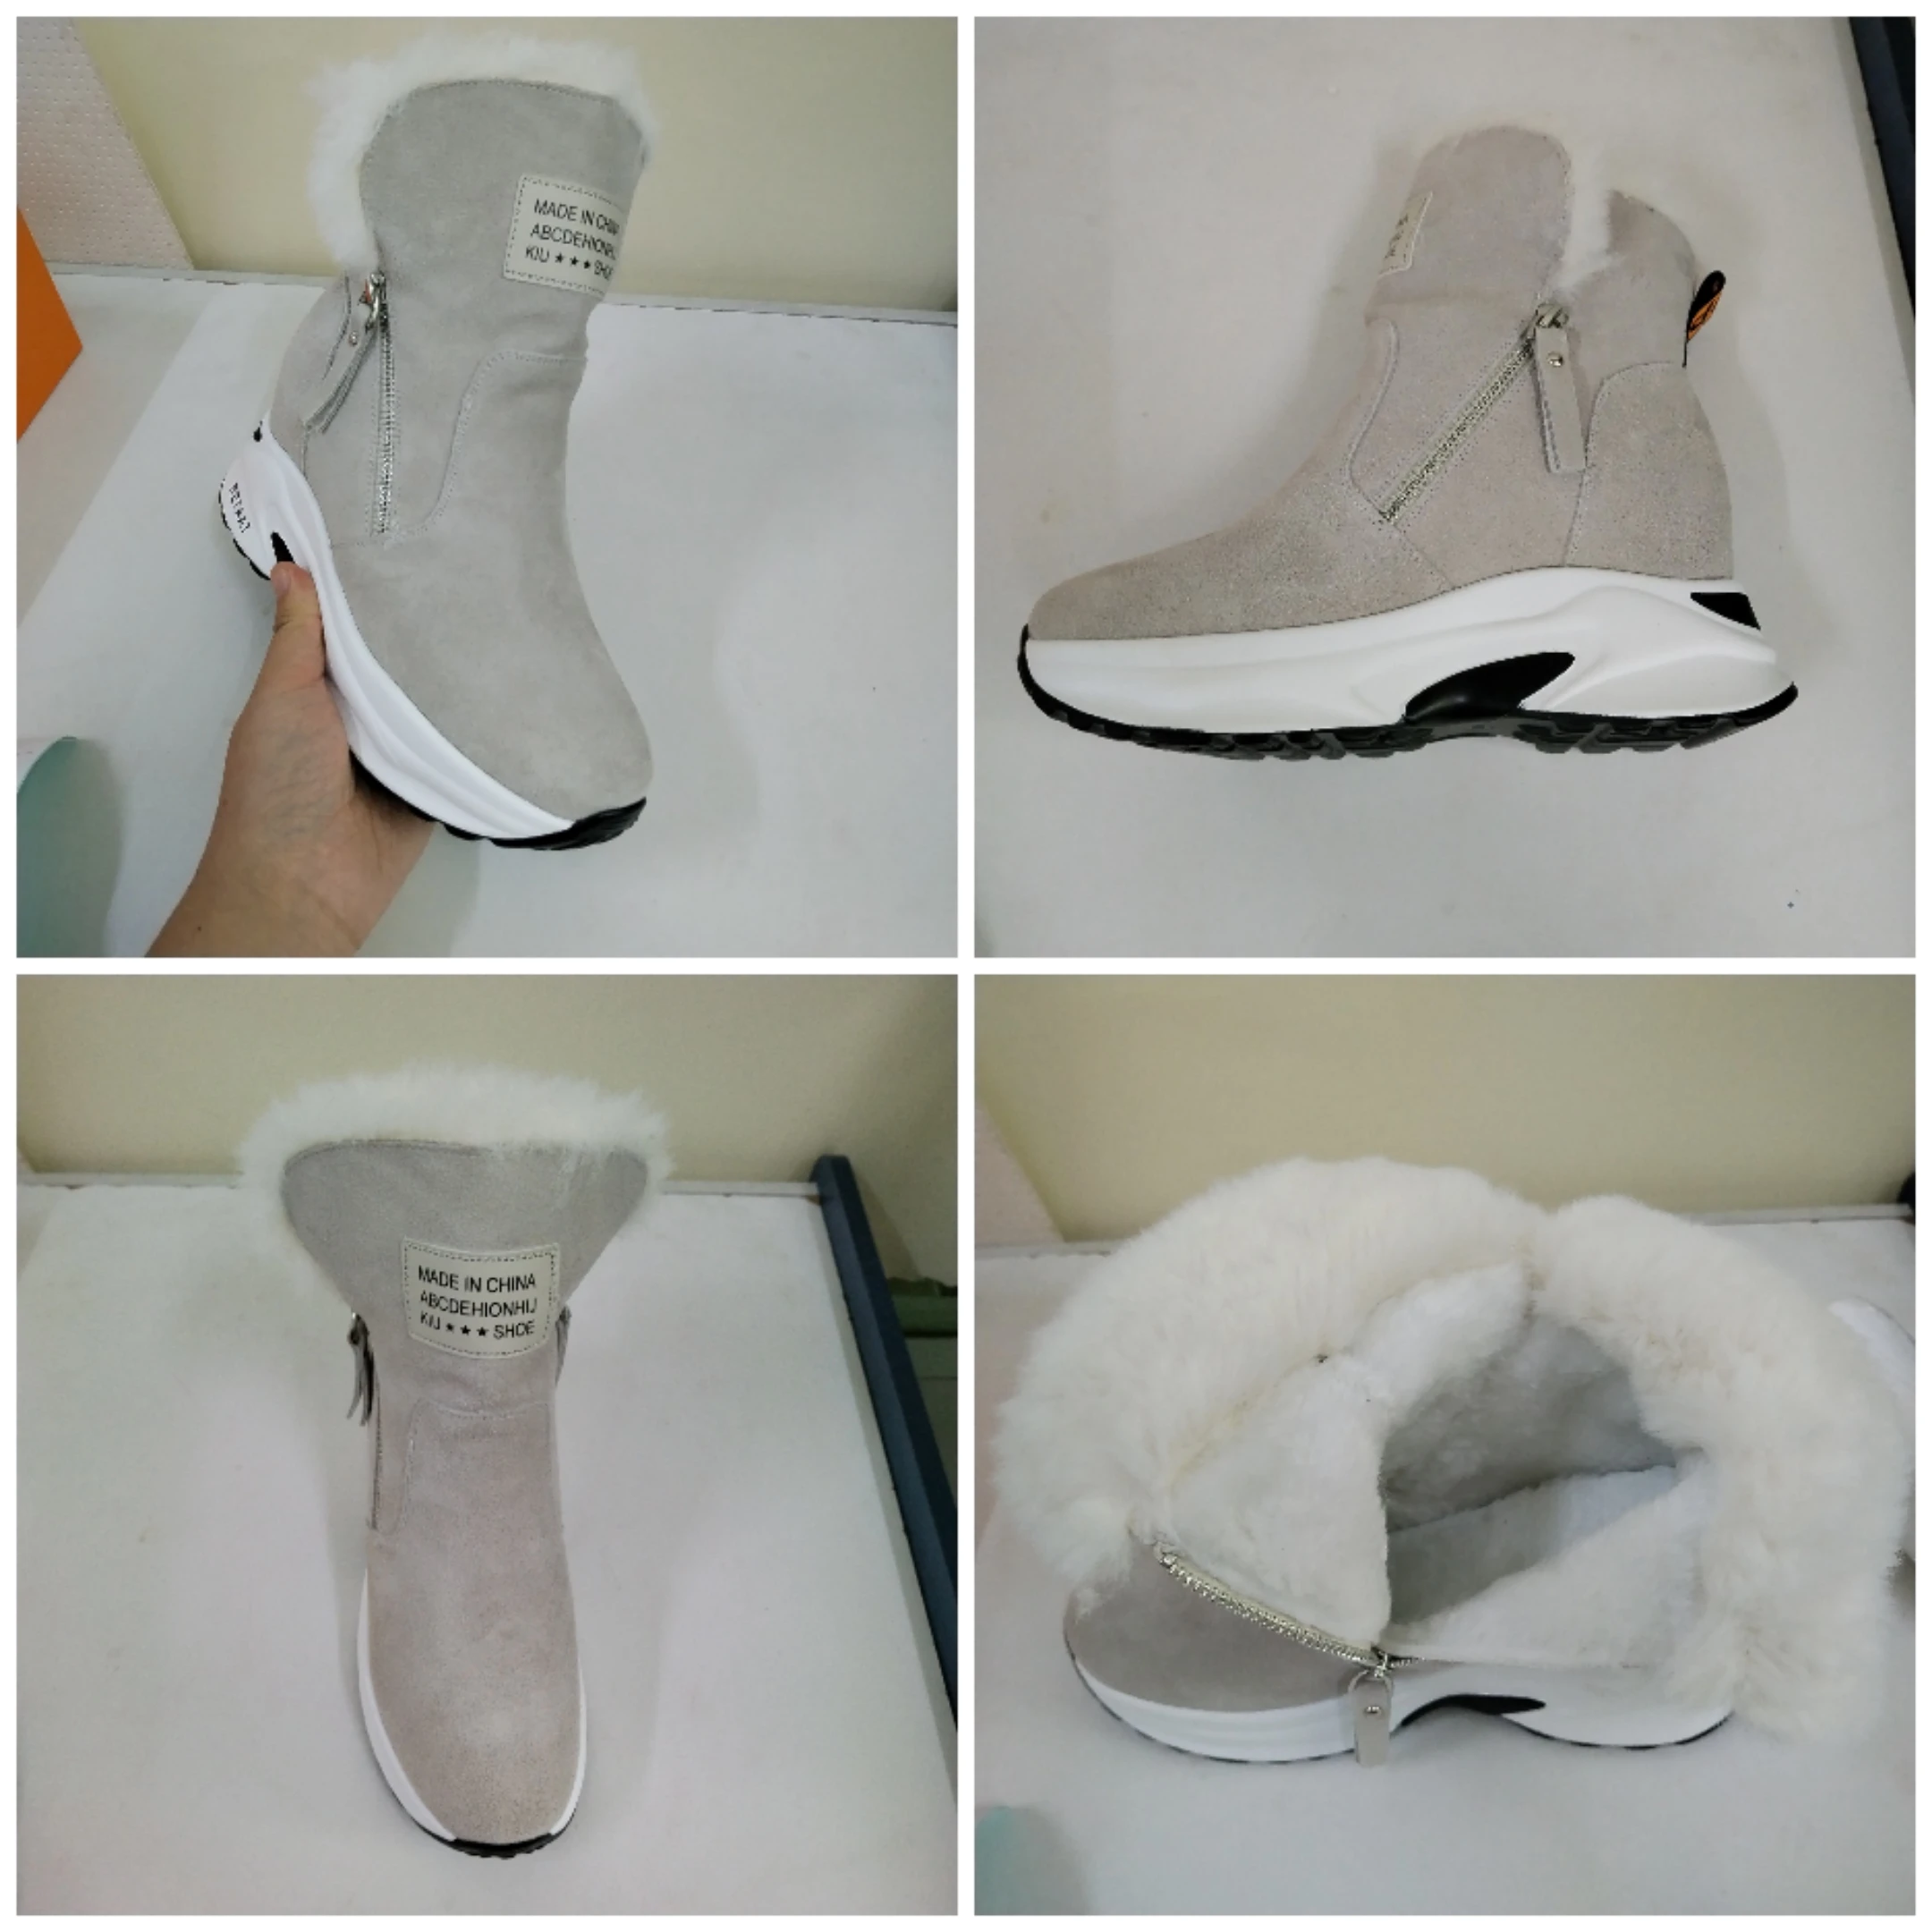 Fujin/женские зимние ботинки из натуральной замши с натуральным мехом наплатформе 8,5 см; Женские зимние ботинки на молнии; Теплые ботильоны